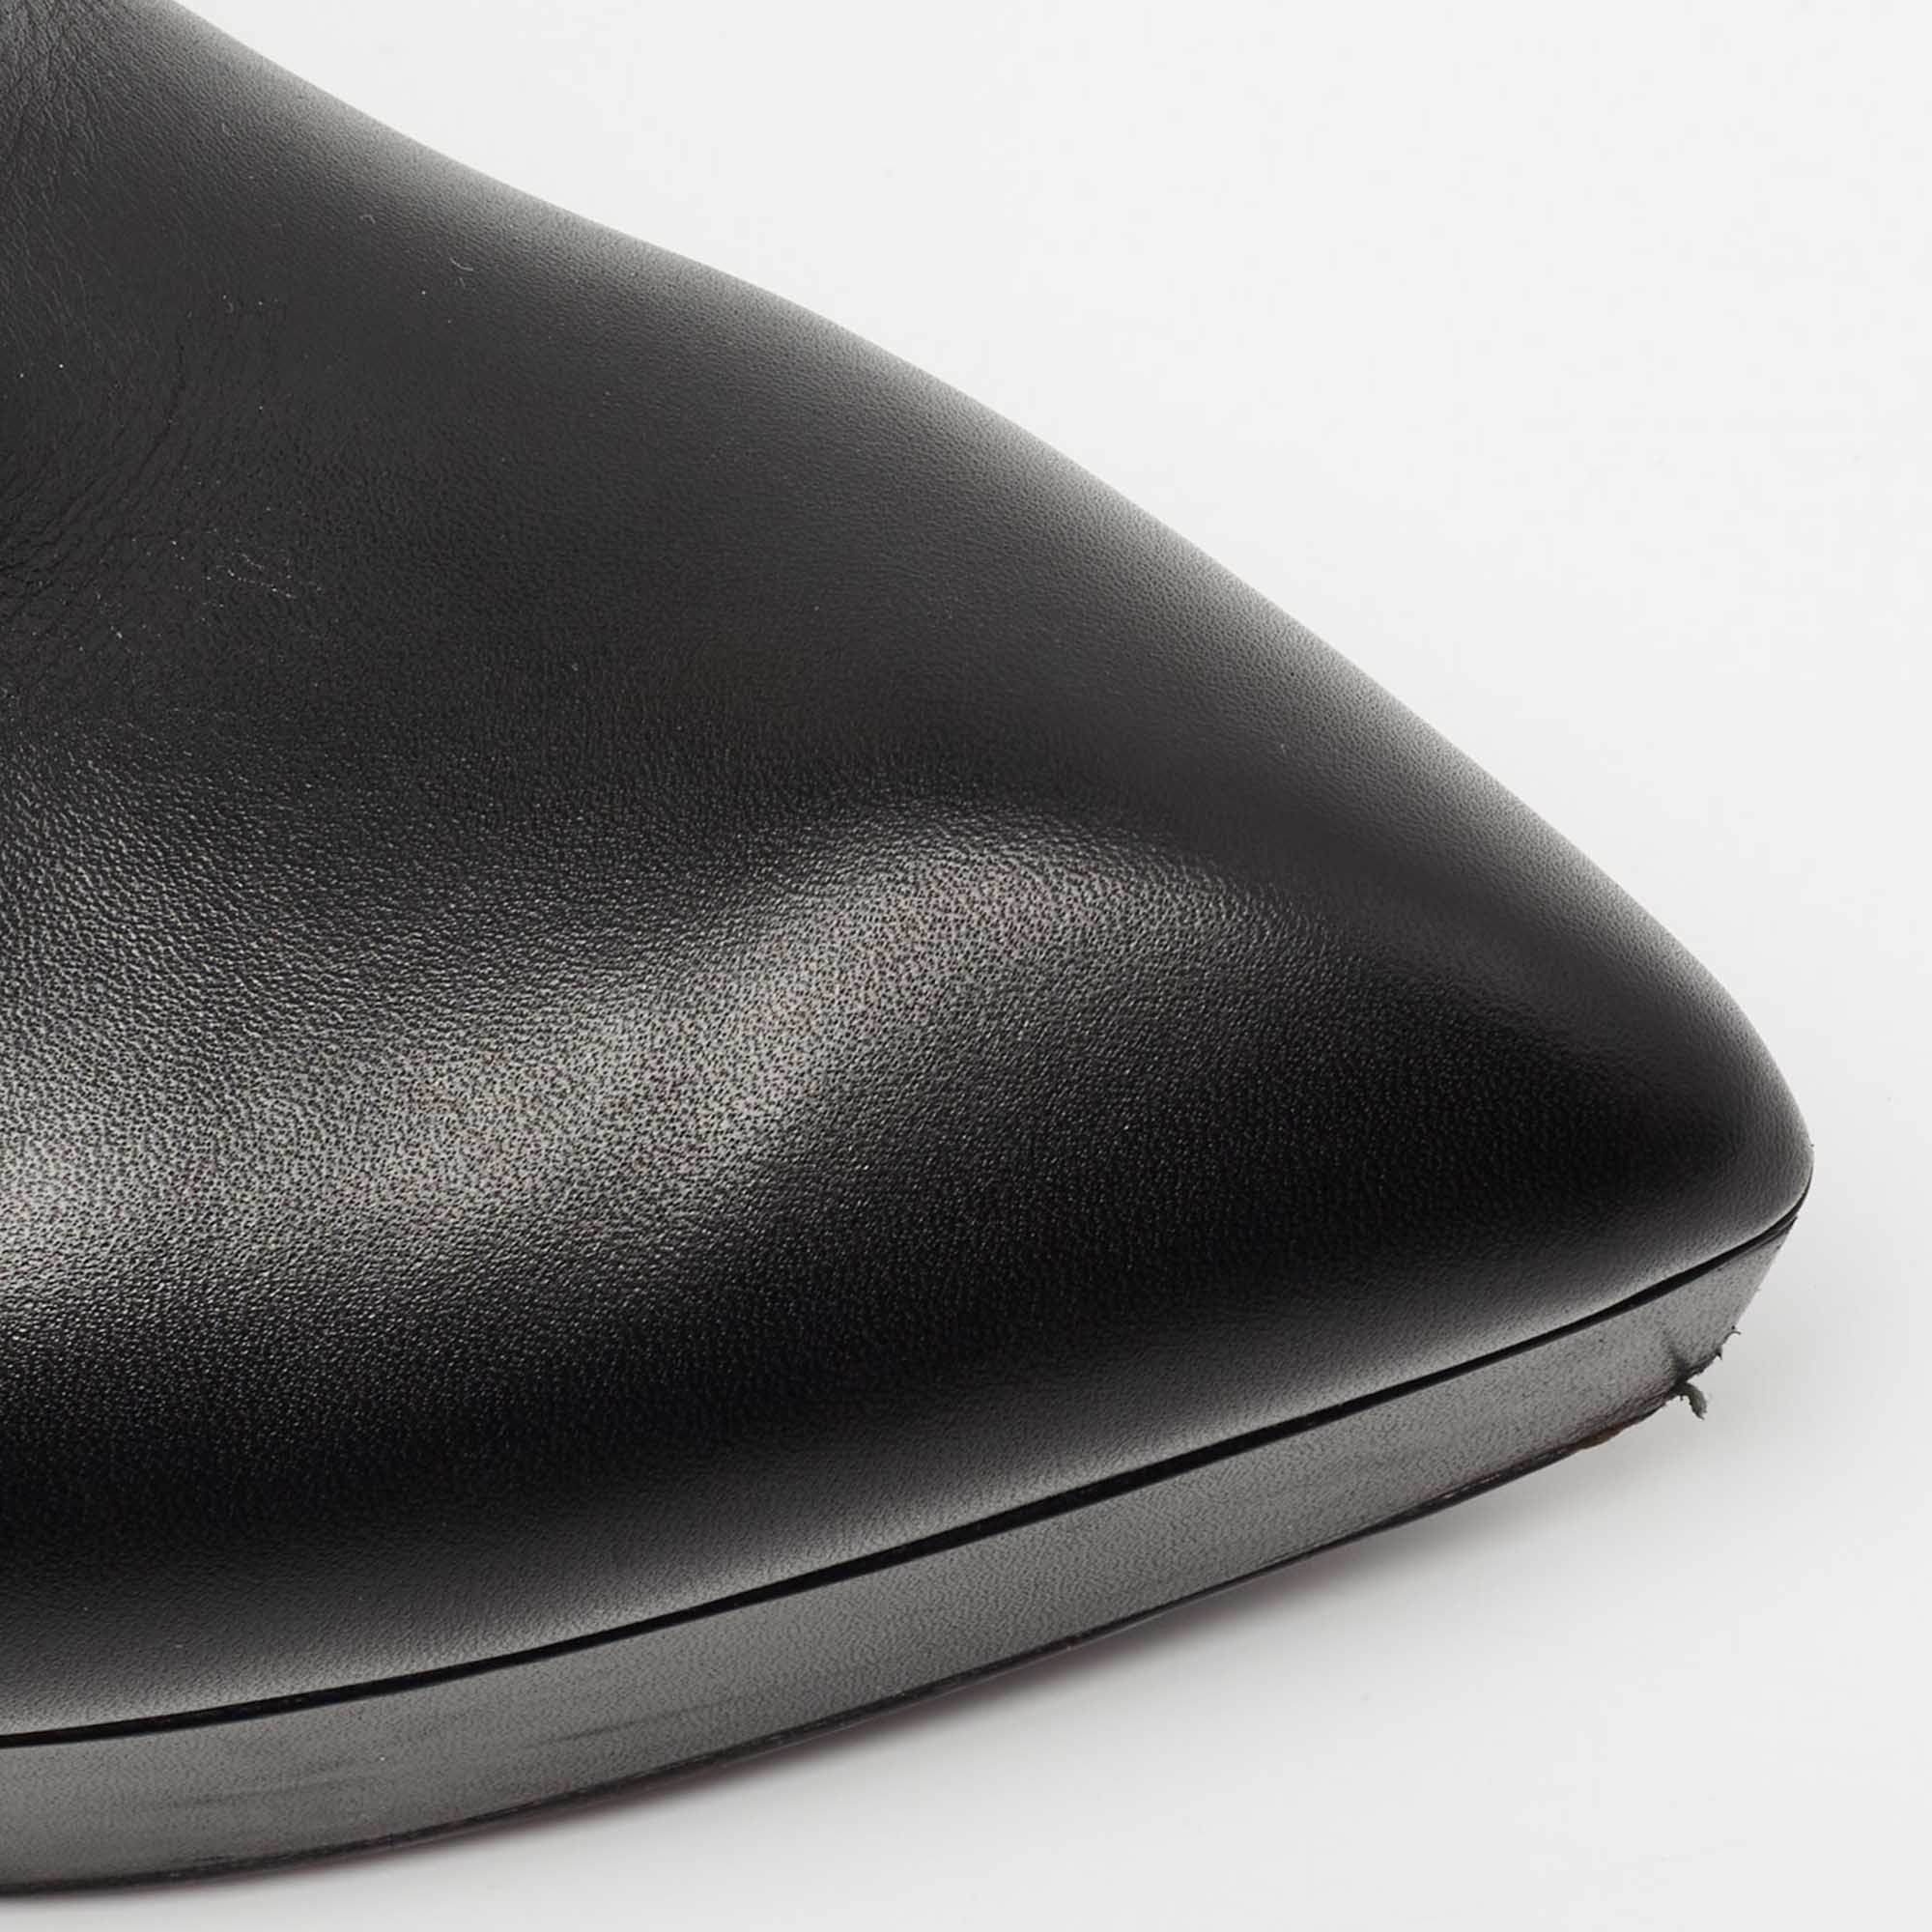 Saint Laurent Black Leather Platform Ankle Boots Size 37